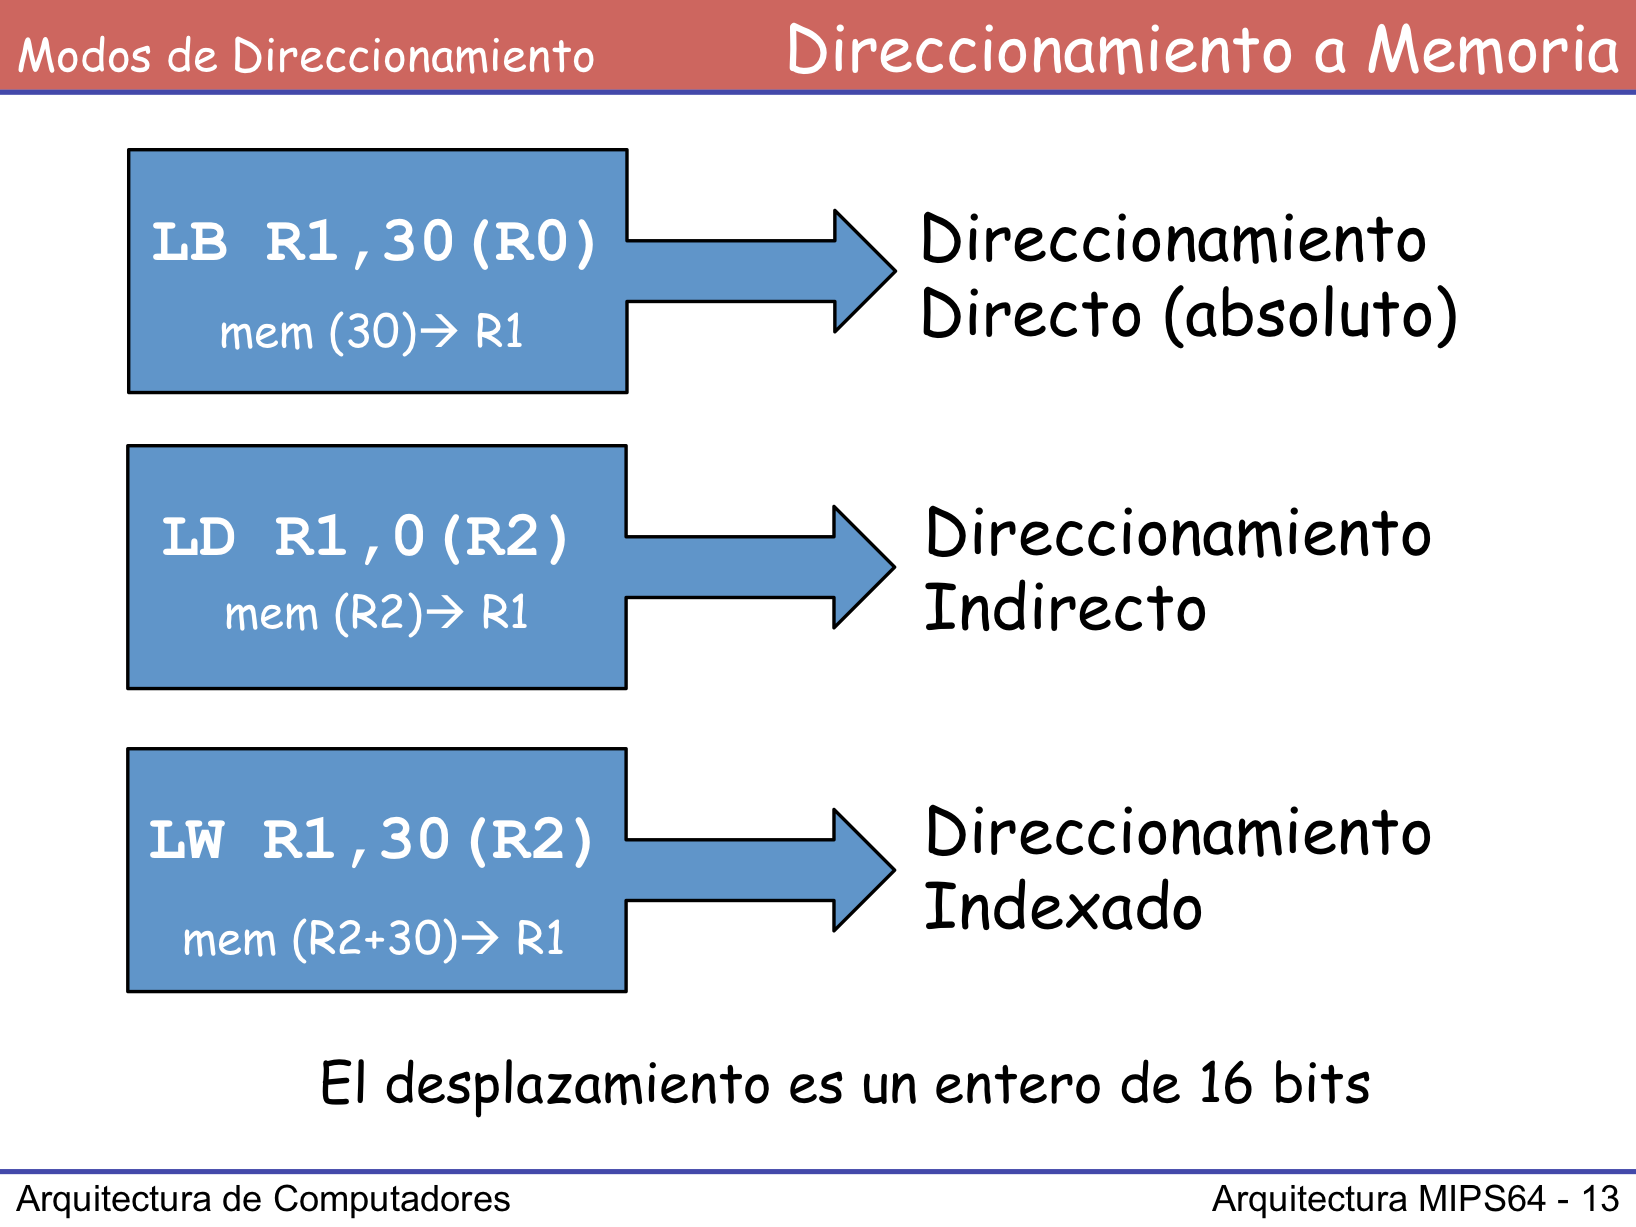 Mediante un único formato de direccionamiento (denominado direccionamiento por desplazamiento) y sus variaciones, MIPS64 consigue 3 modos distintos de direccionamiento a memoria: Direccionamiento